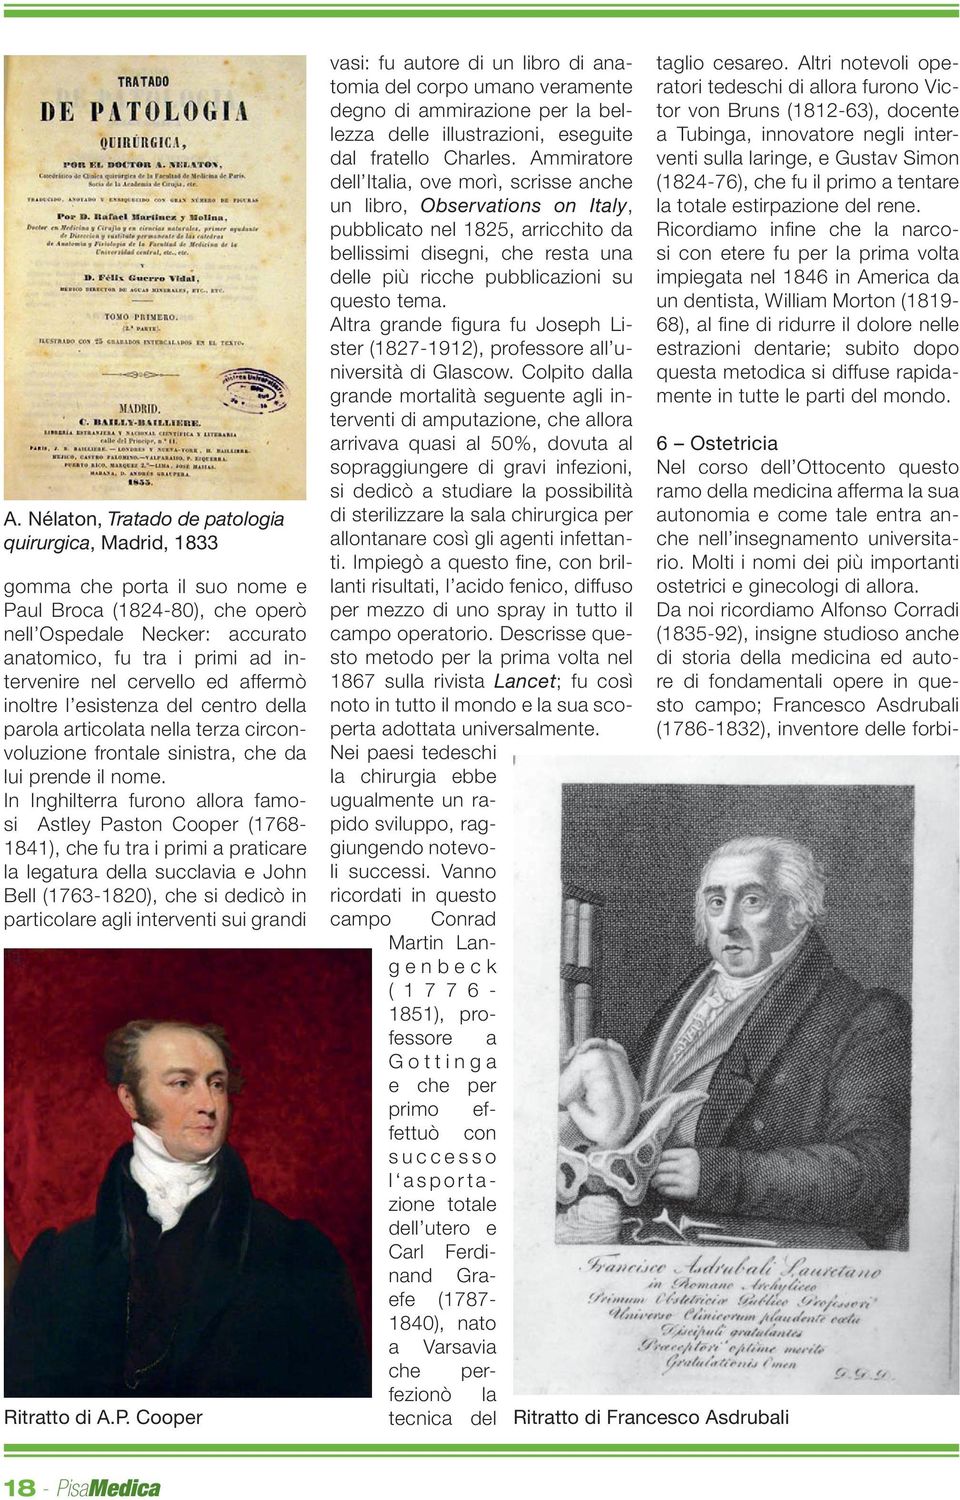 In Inghilterra furono allora famosi Astley Paston Cooper (1768-1841), che fu tra i primi a praticare la legatura della succlavia e John Bell (1763-1820), che si dedicò in particolare agli interventi